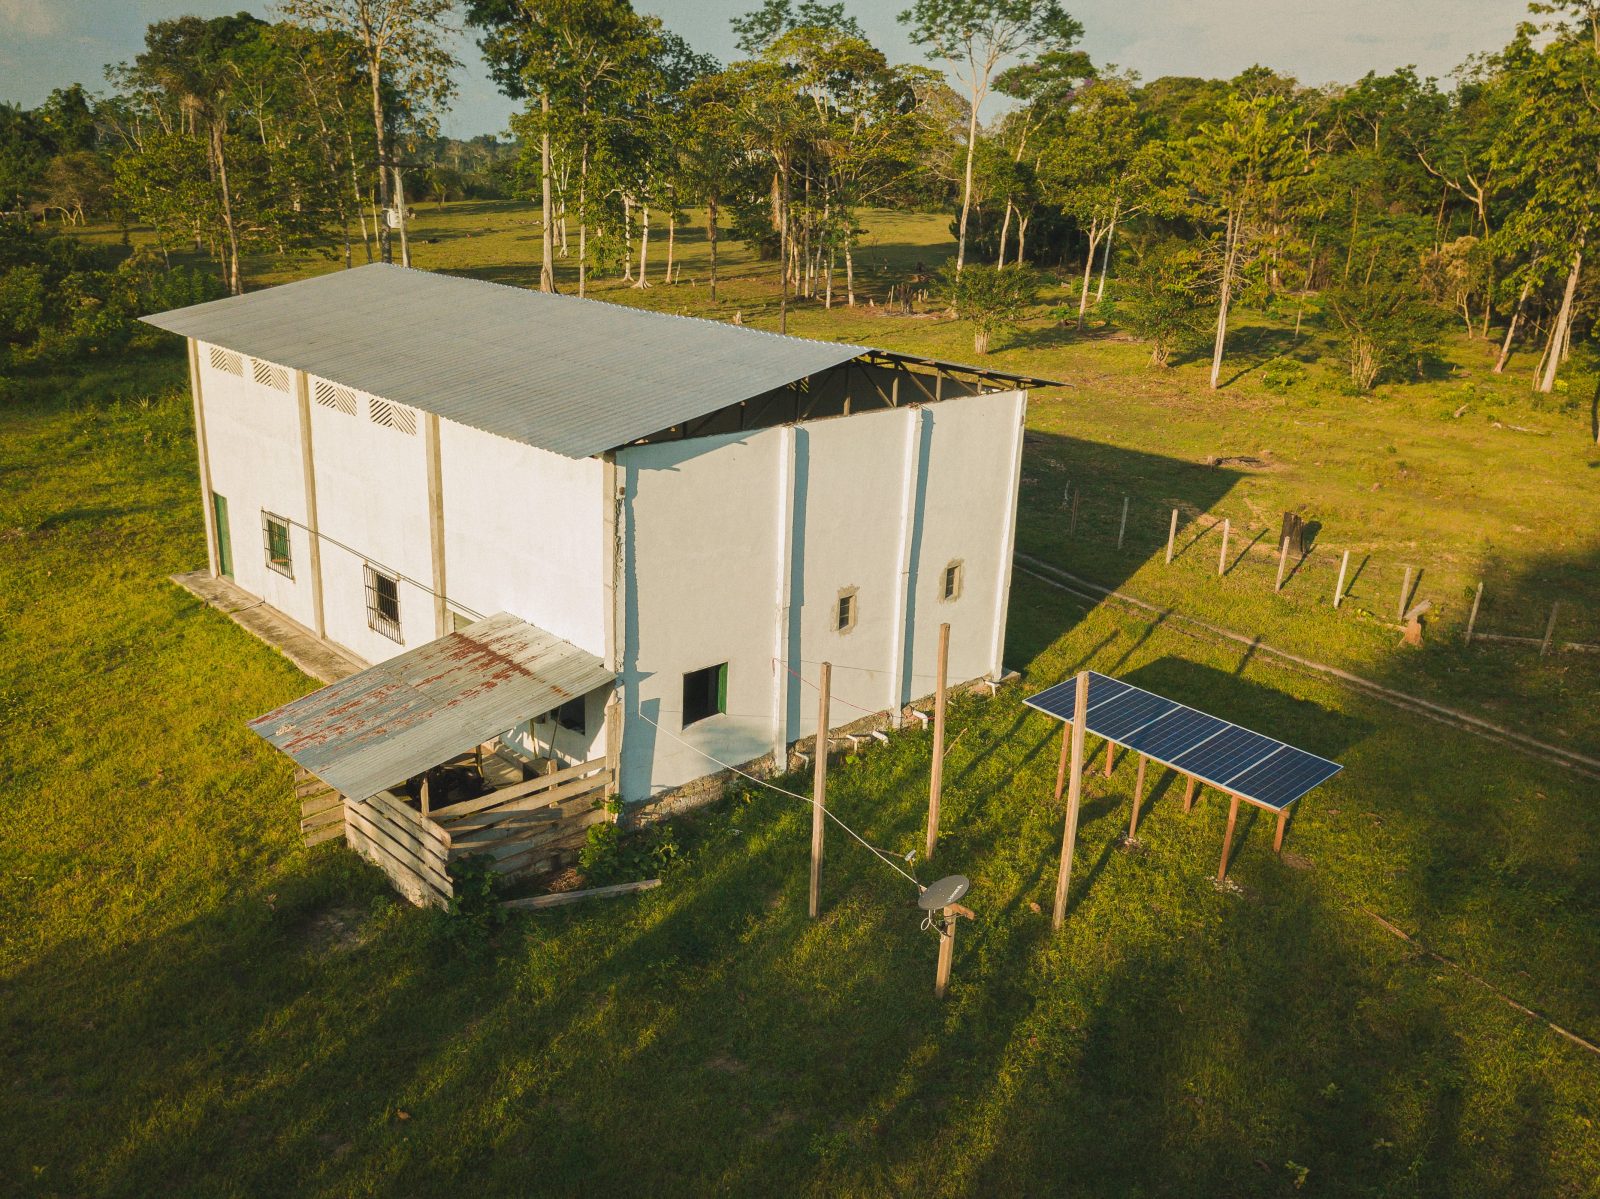 Imagem aérea de empacotadora de farinha e painel solar, projetos apoiados pela Fundação Amazônia Sustentável (FAS).